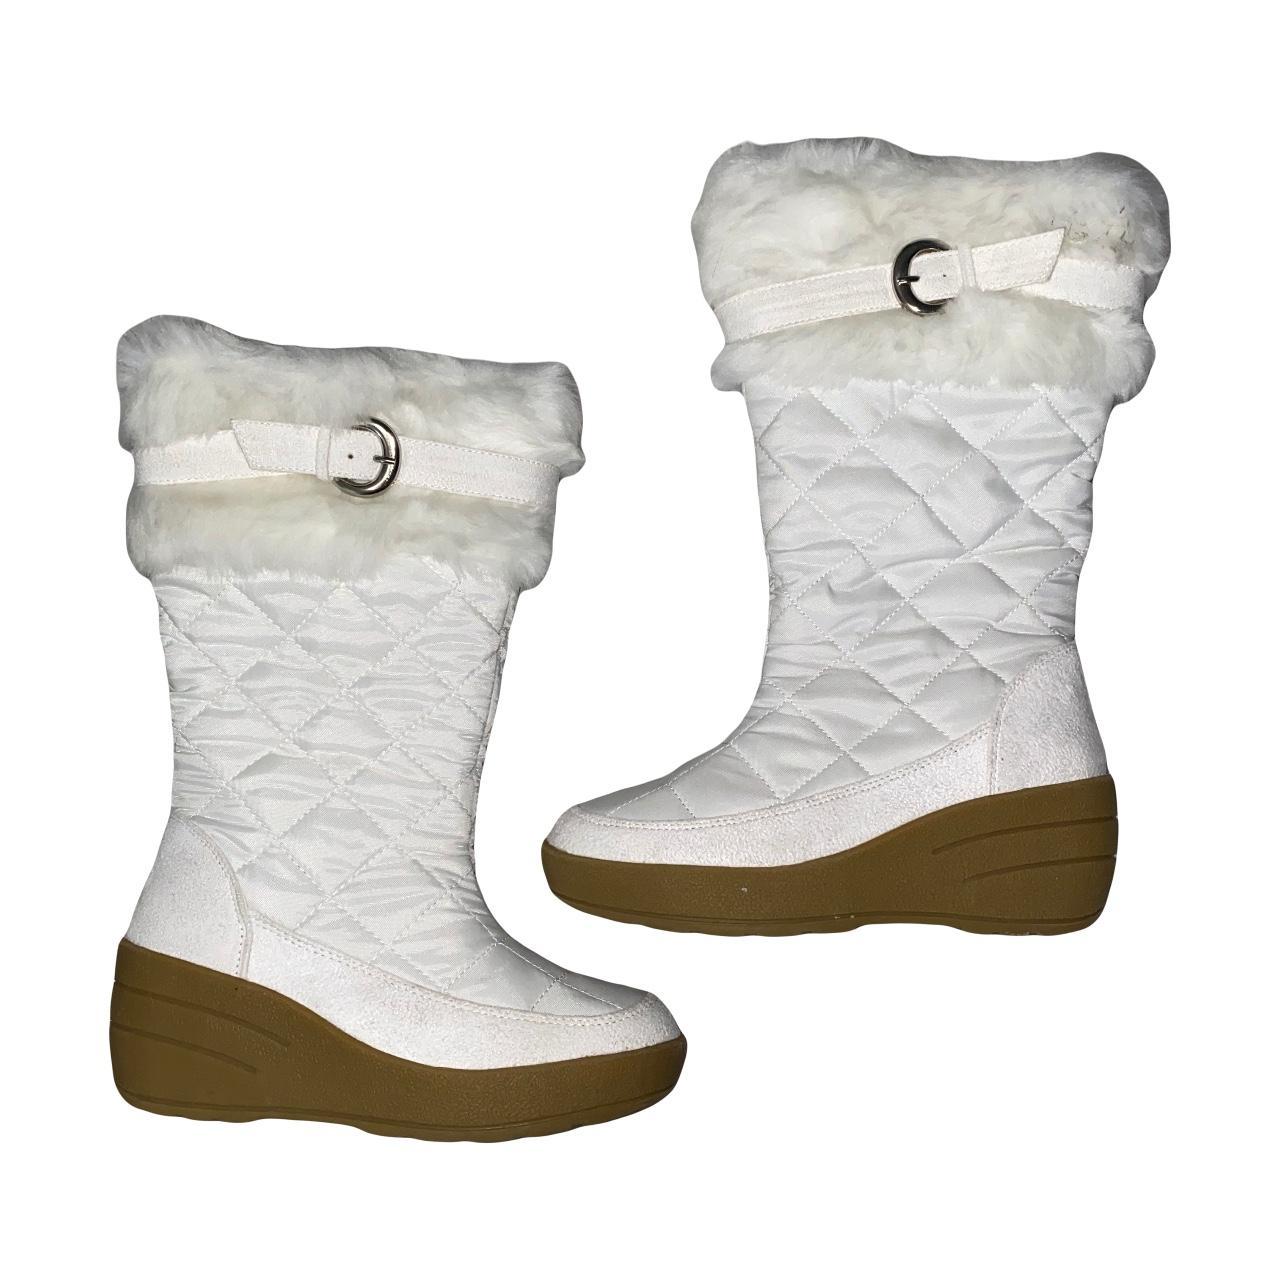 Canyon River Blues Women's White Boots